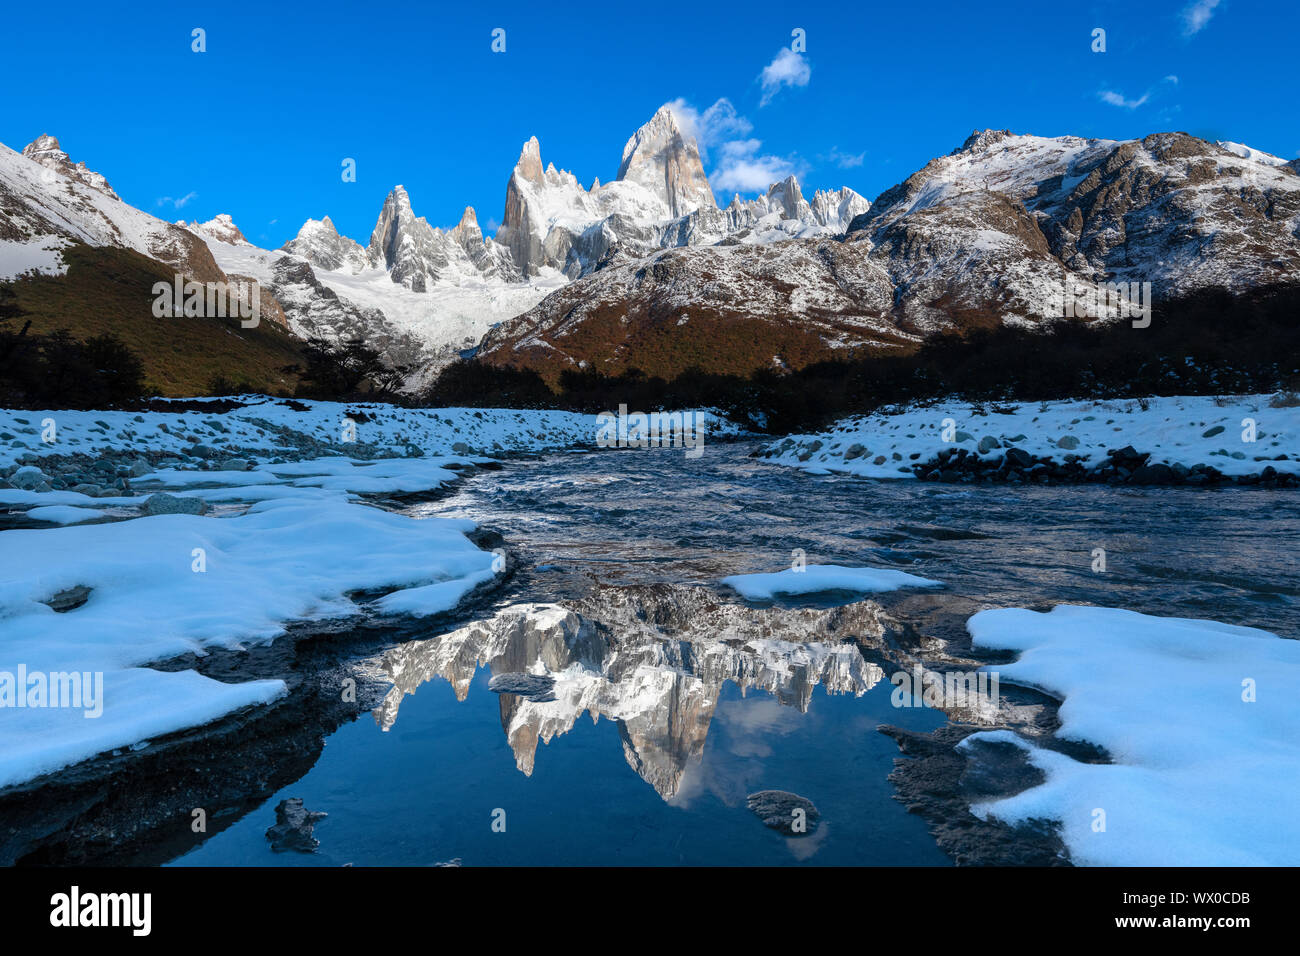 Schnee Szene des Mount Fitz Roy und Cerro Torre, Nationalpark Los Glaciares, UNESCO-Weltkulturerbe, Patagonien, Argentinien, Südamerika Stockfoto